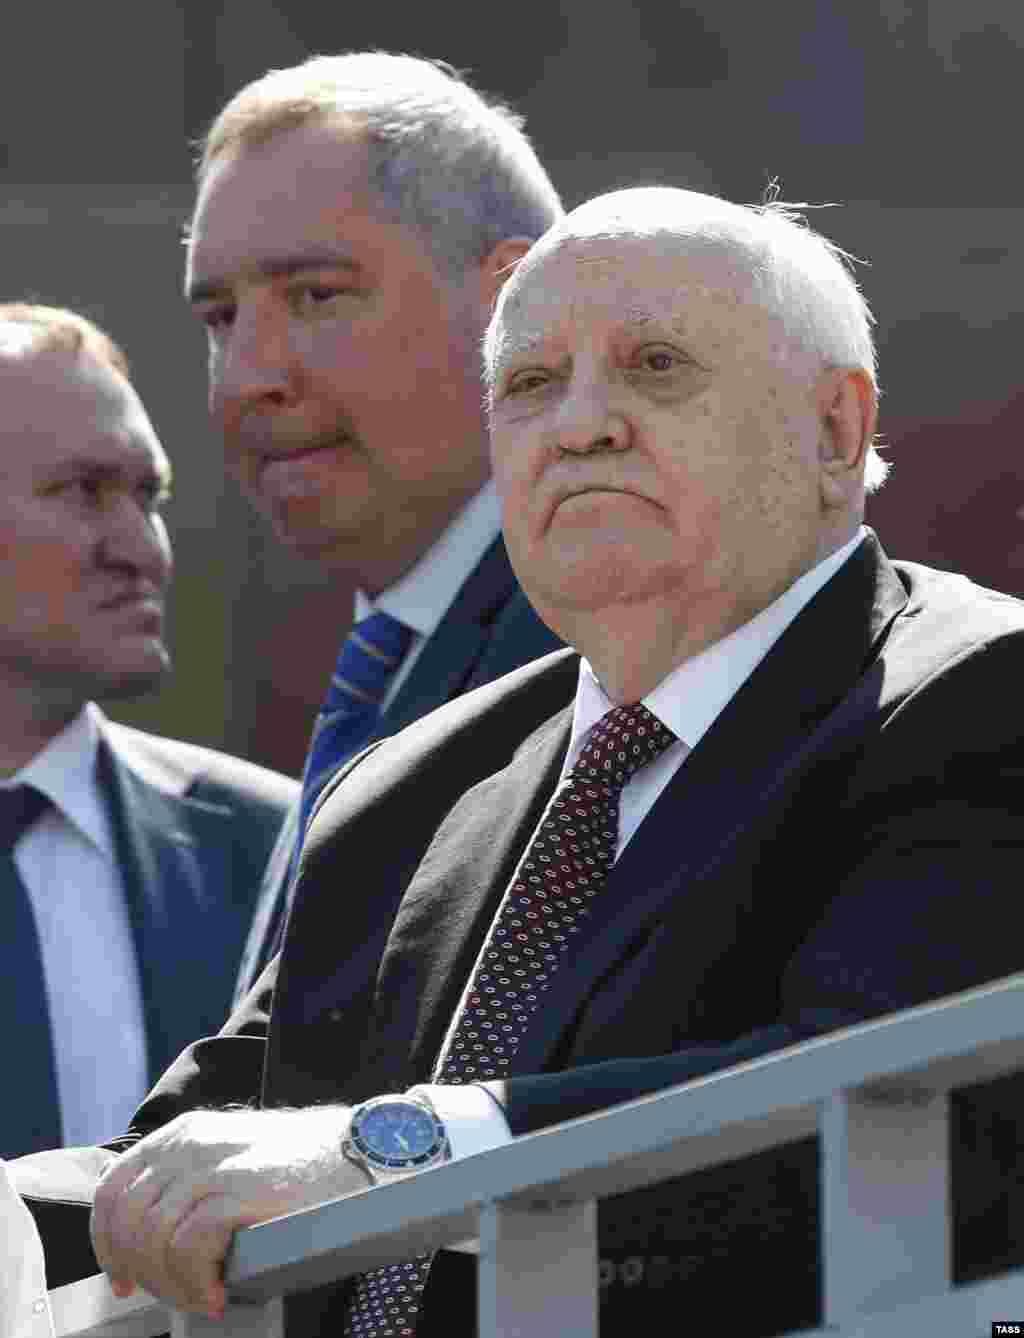 &nbsp;Вице-премьер РФ Дмитрий Рогозин и бывший президент СССР Михаил Горбачев на Красной площади во время военного парада